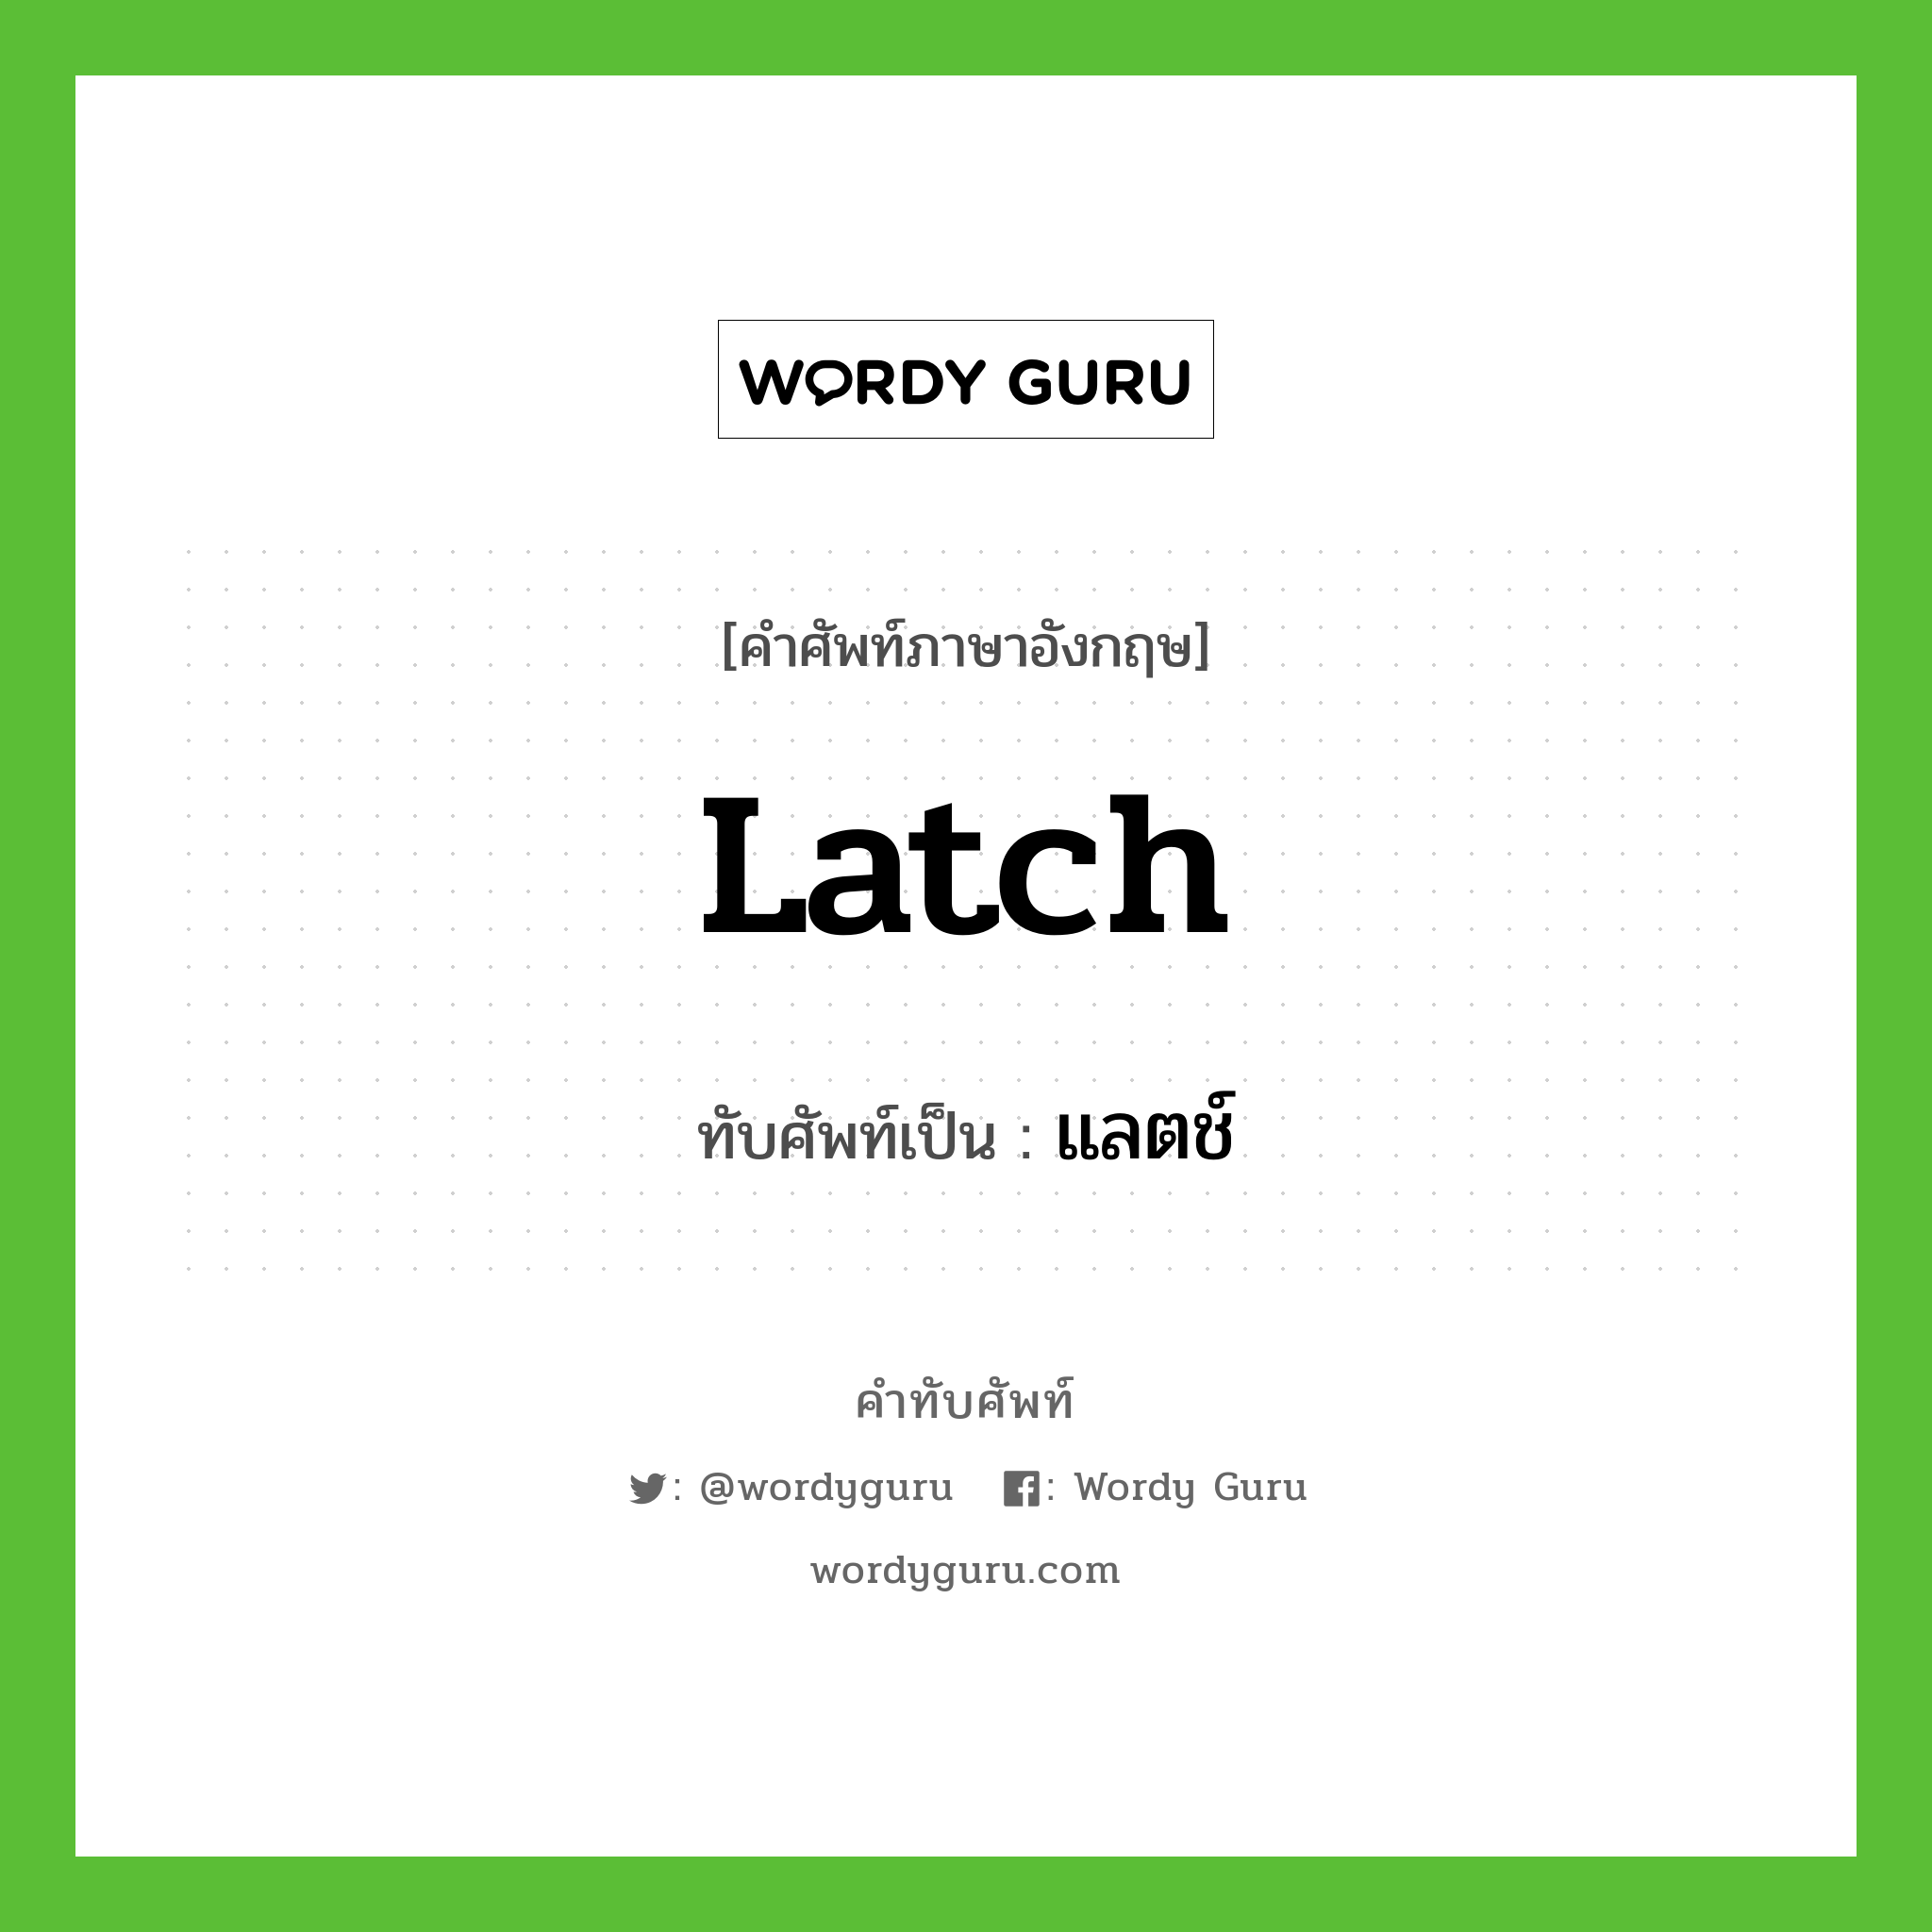 latch เขียนเป็นคำไทยว่าอะไร?, คำศัพท์ภาษาอังกฤษ latch ทับศัพท์เป็น แลตช์